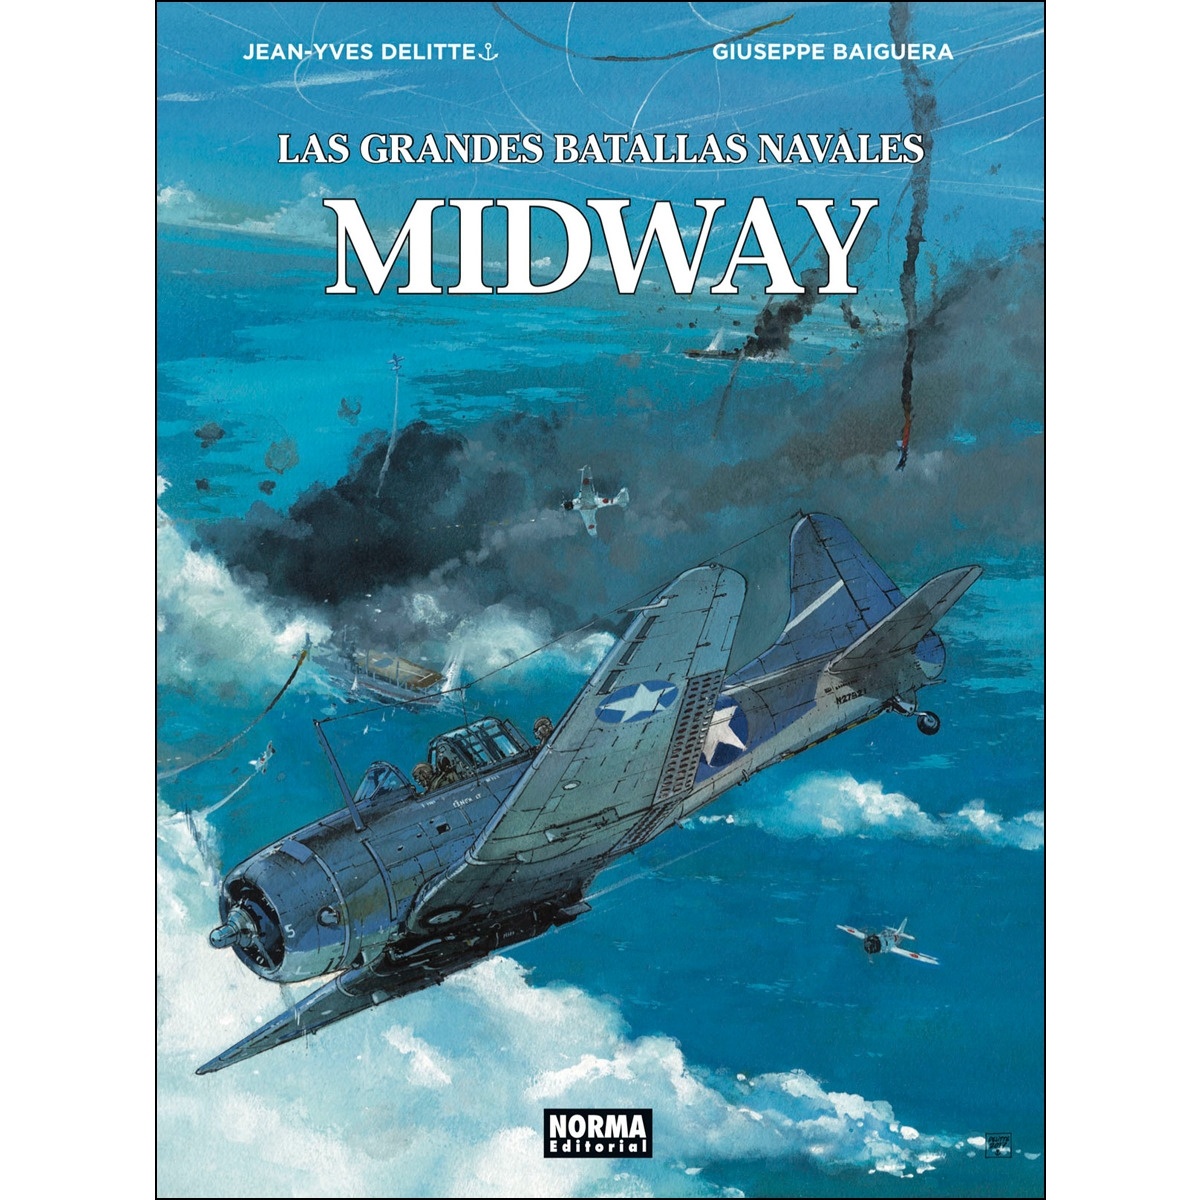 Las grandes batallas navales. Midway